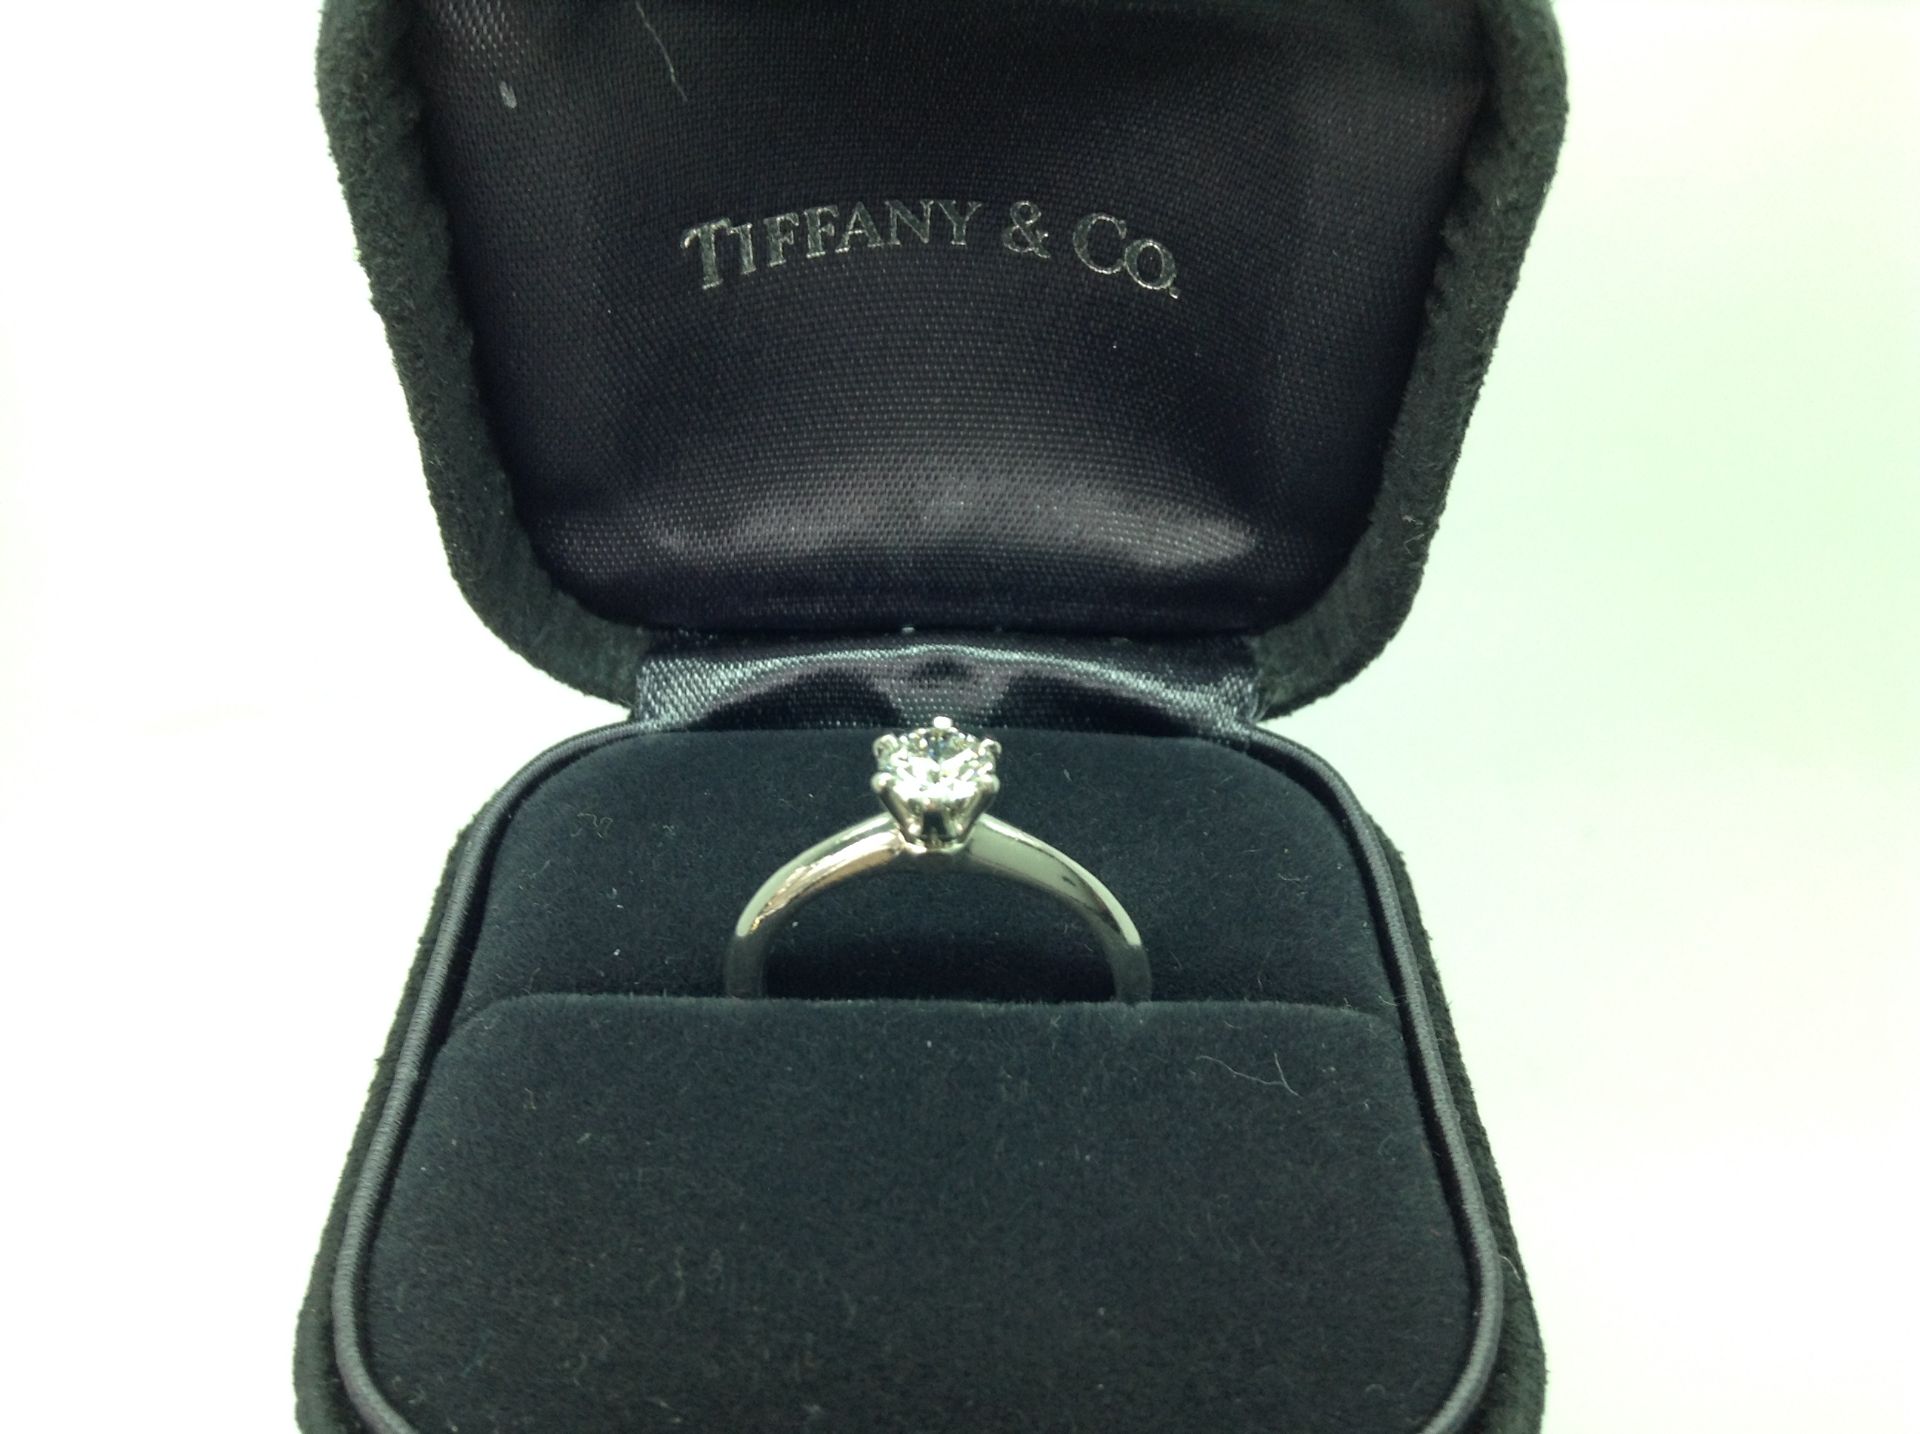 TIFFANY & CO DIAMOND PLATINUM ENGAGEMENT RING - Image 4 of 4